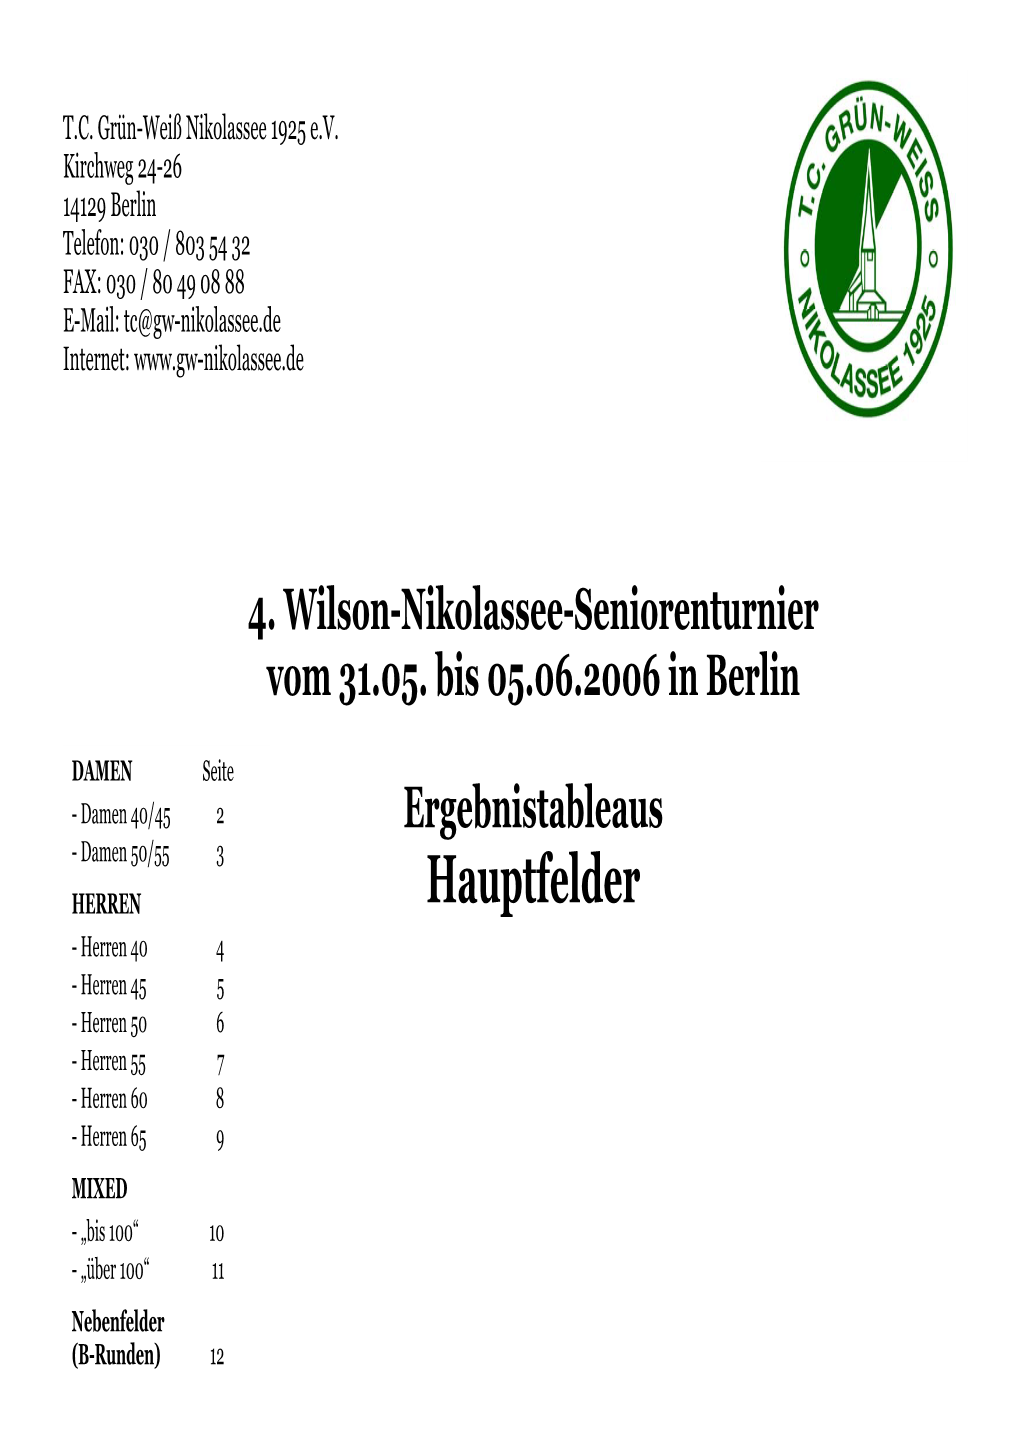 4. Wilson-Nikolassee-Seniorenturnier Vom 31.05. Bis 05.06.2006 in Berlin